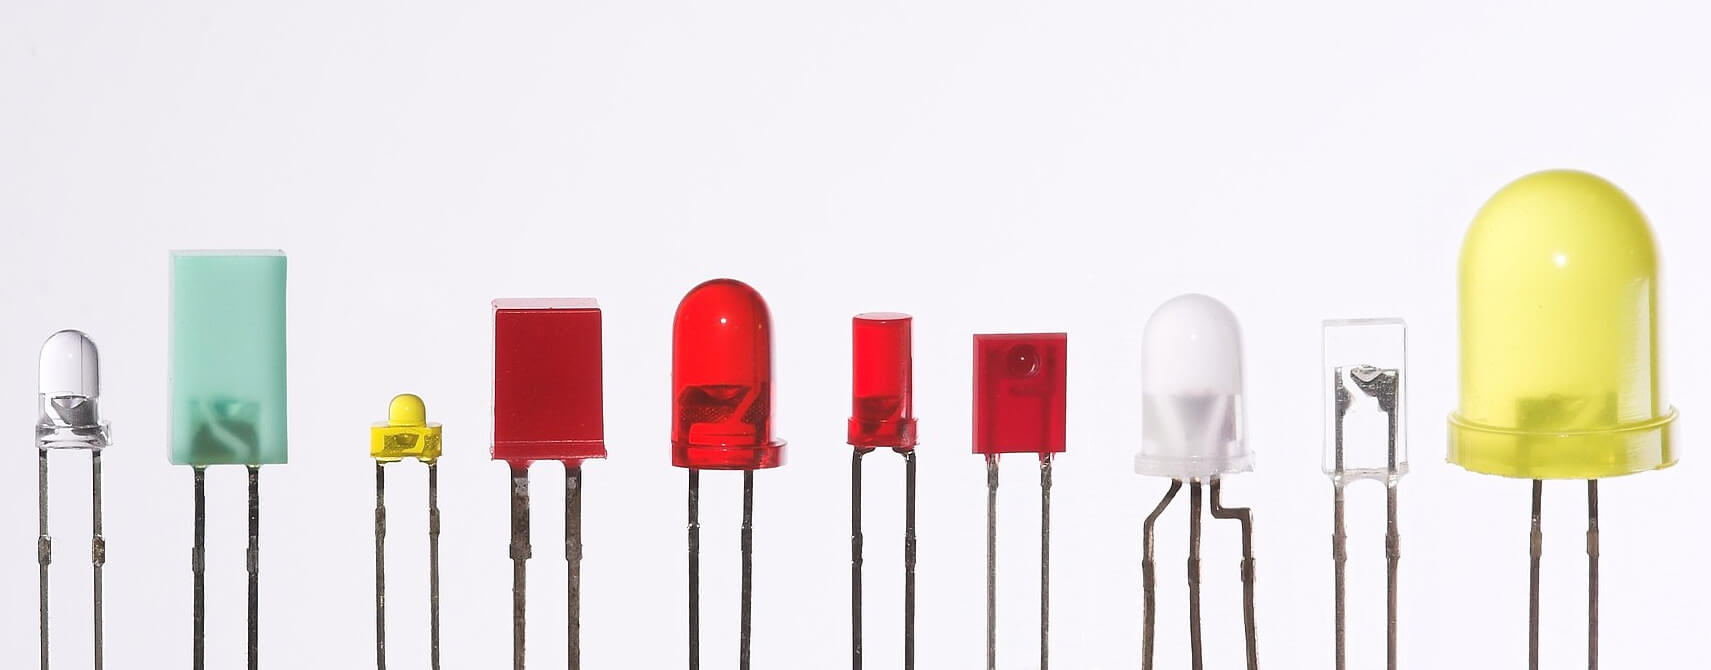 Aké existujú typy LED čipov